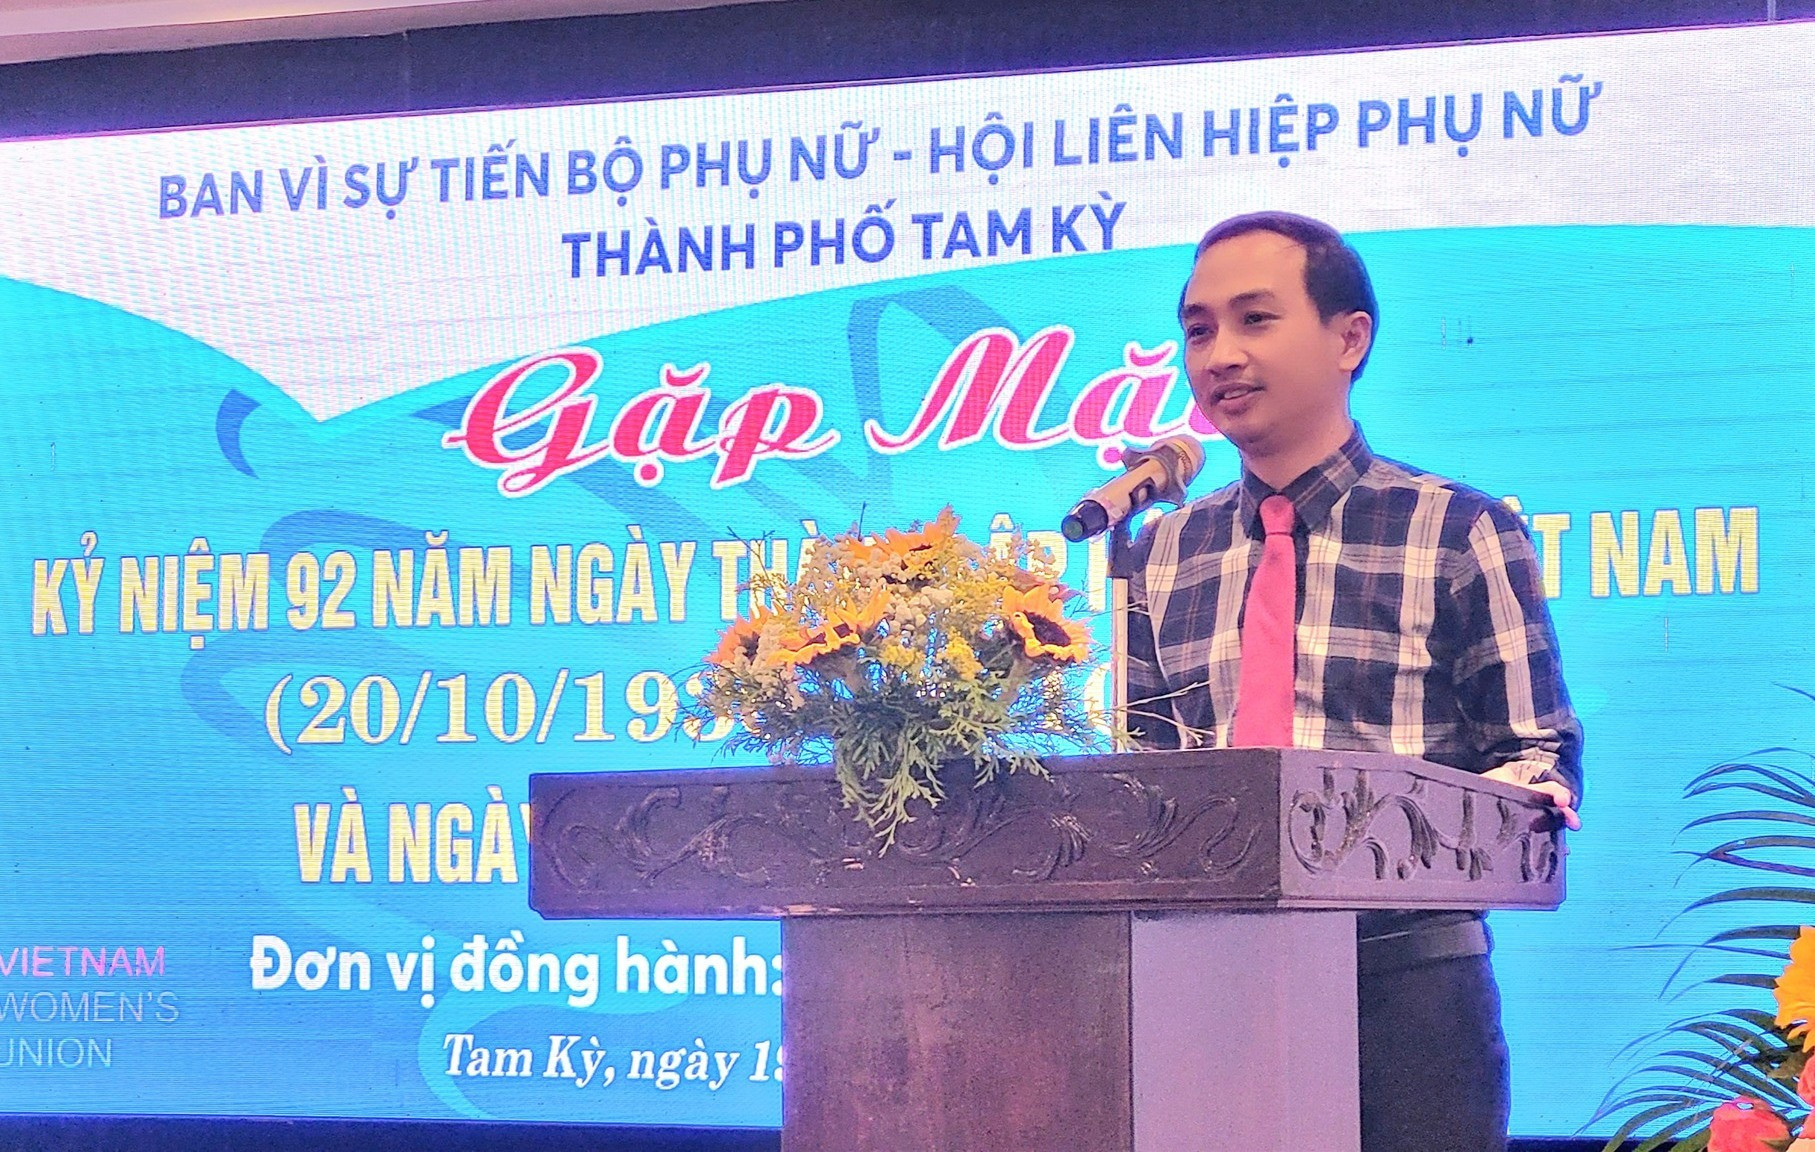 Phó Chủ tịch UBND TP.Tam Kỳ Nguyễn Hồng Lai động viên các chị tiếp tục cố gắng đóng góp cho sự phát triển của thành phố. Ảnh: M.L